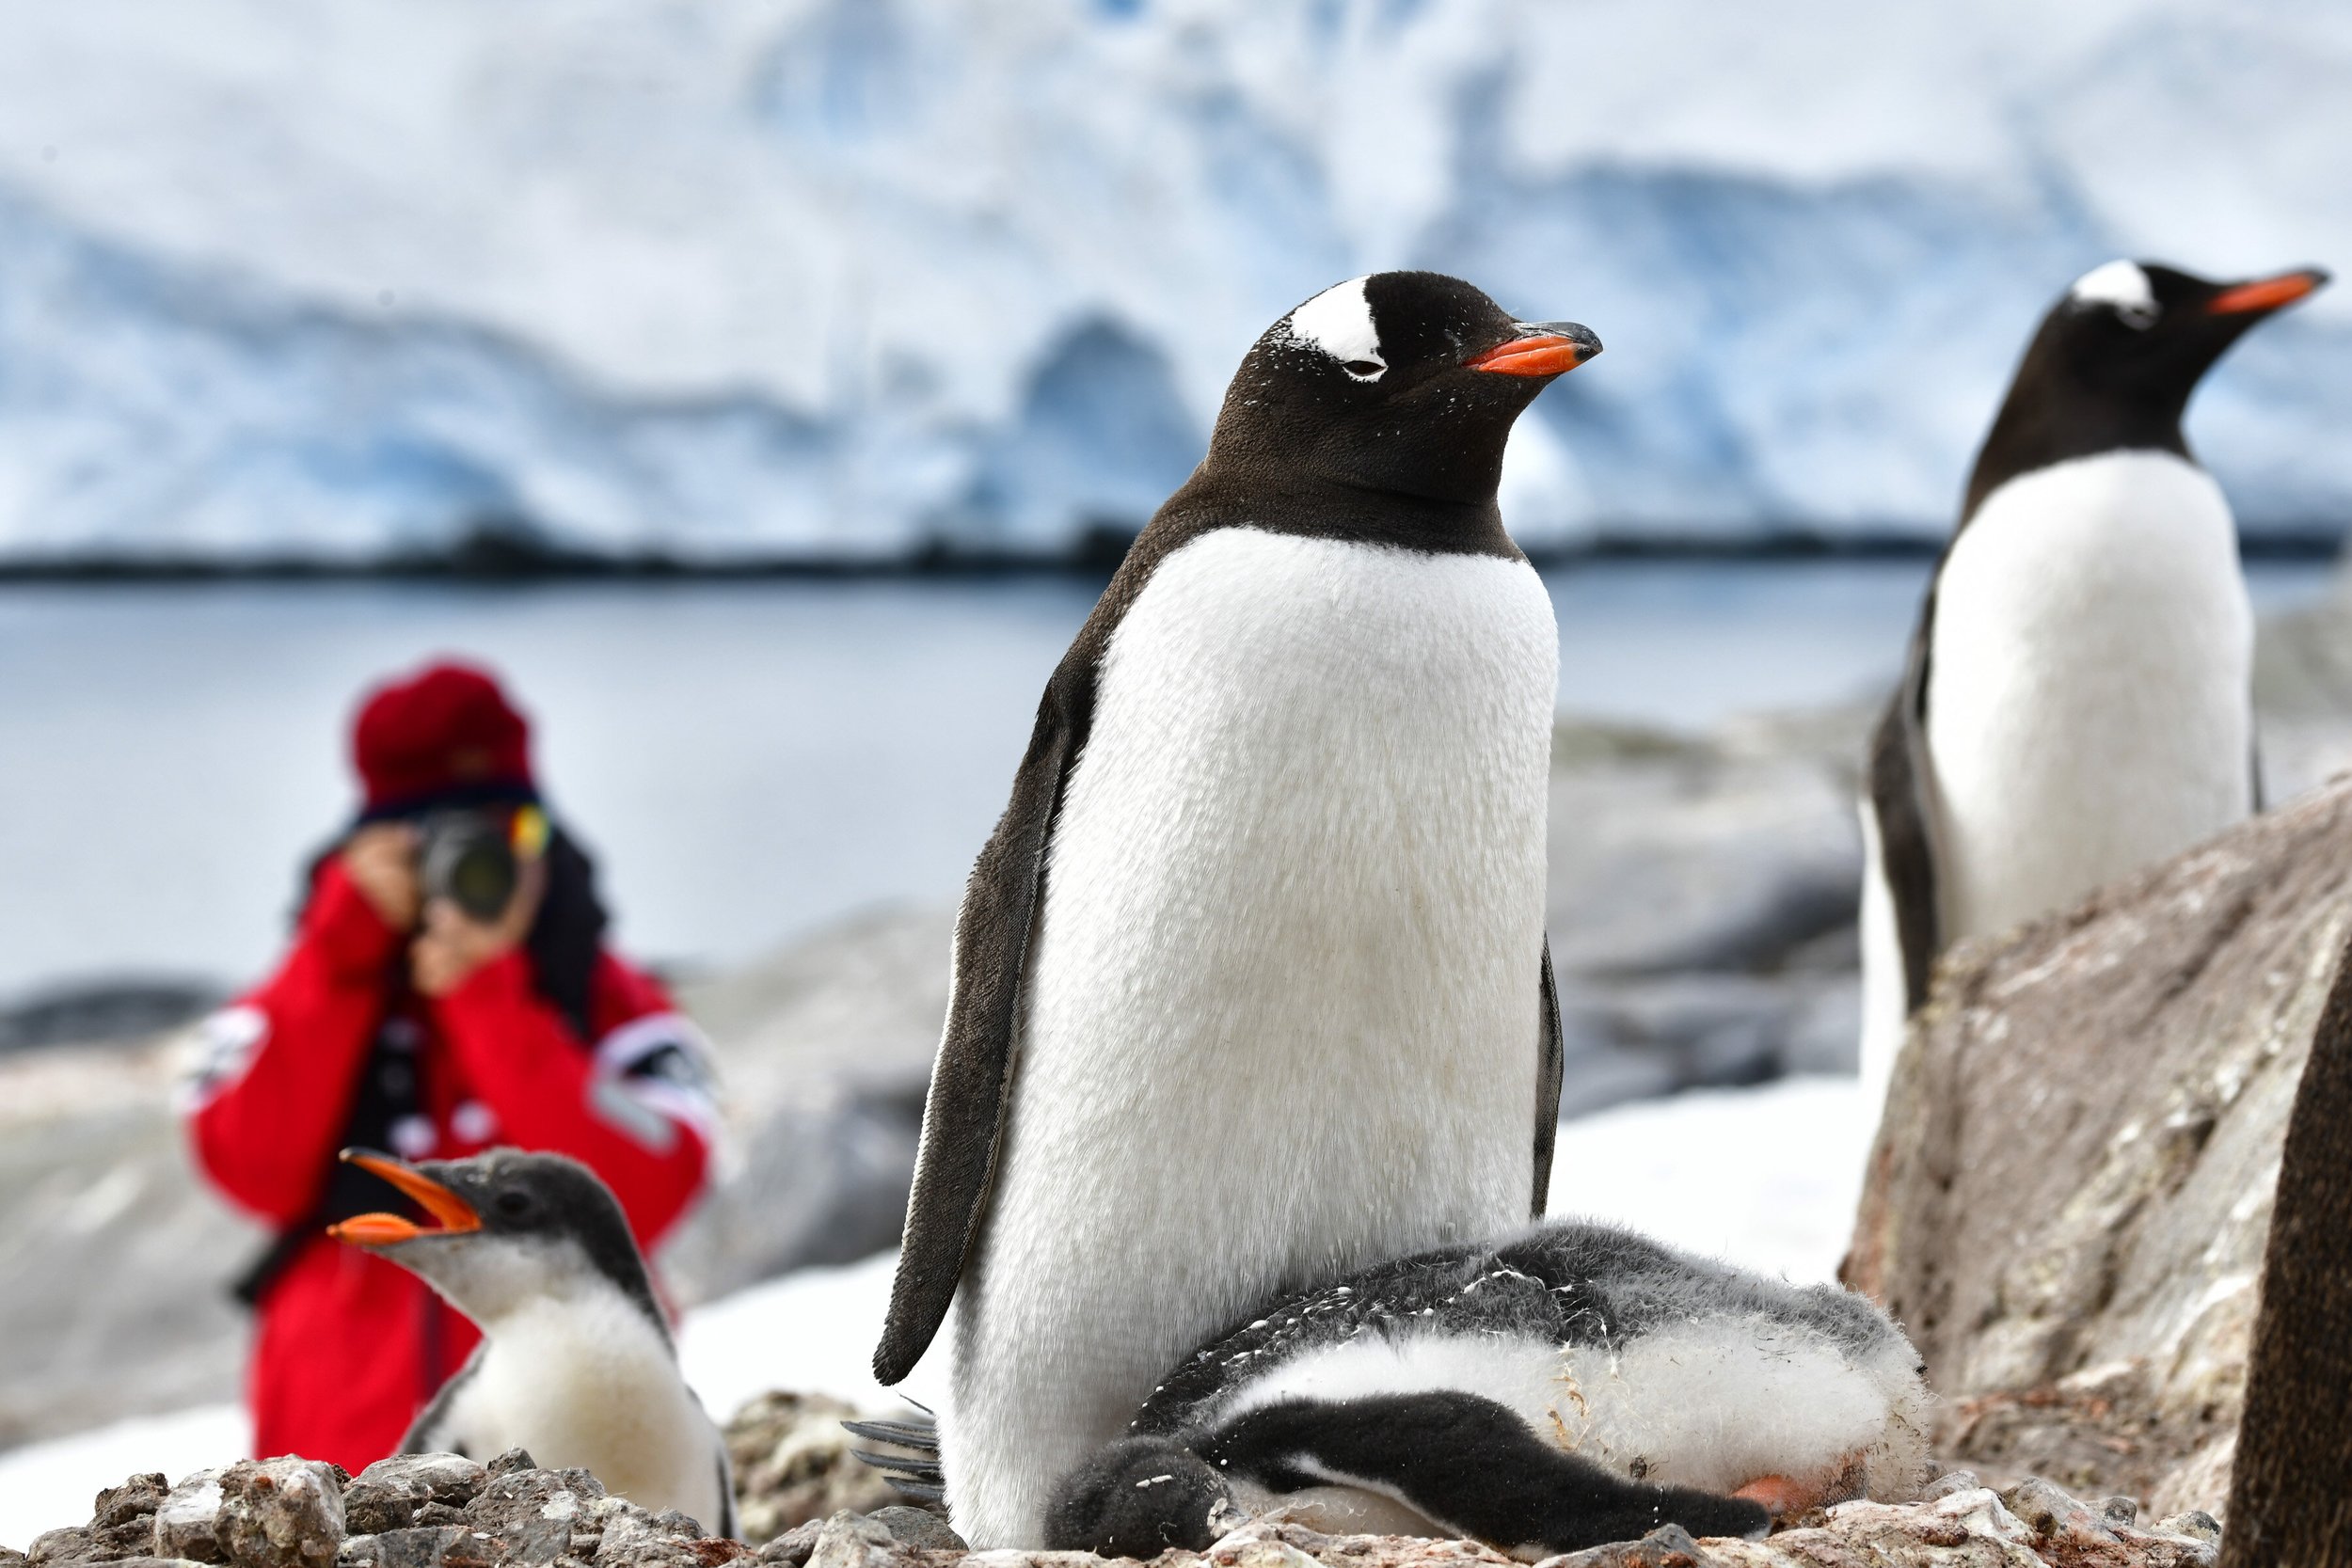 Pax-penguins-Port-Lockroy-Philip-Stone-8502436.jpeg